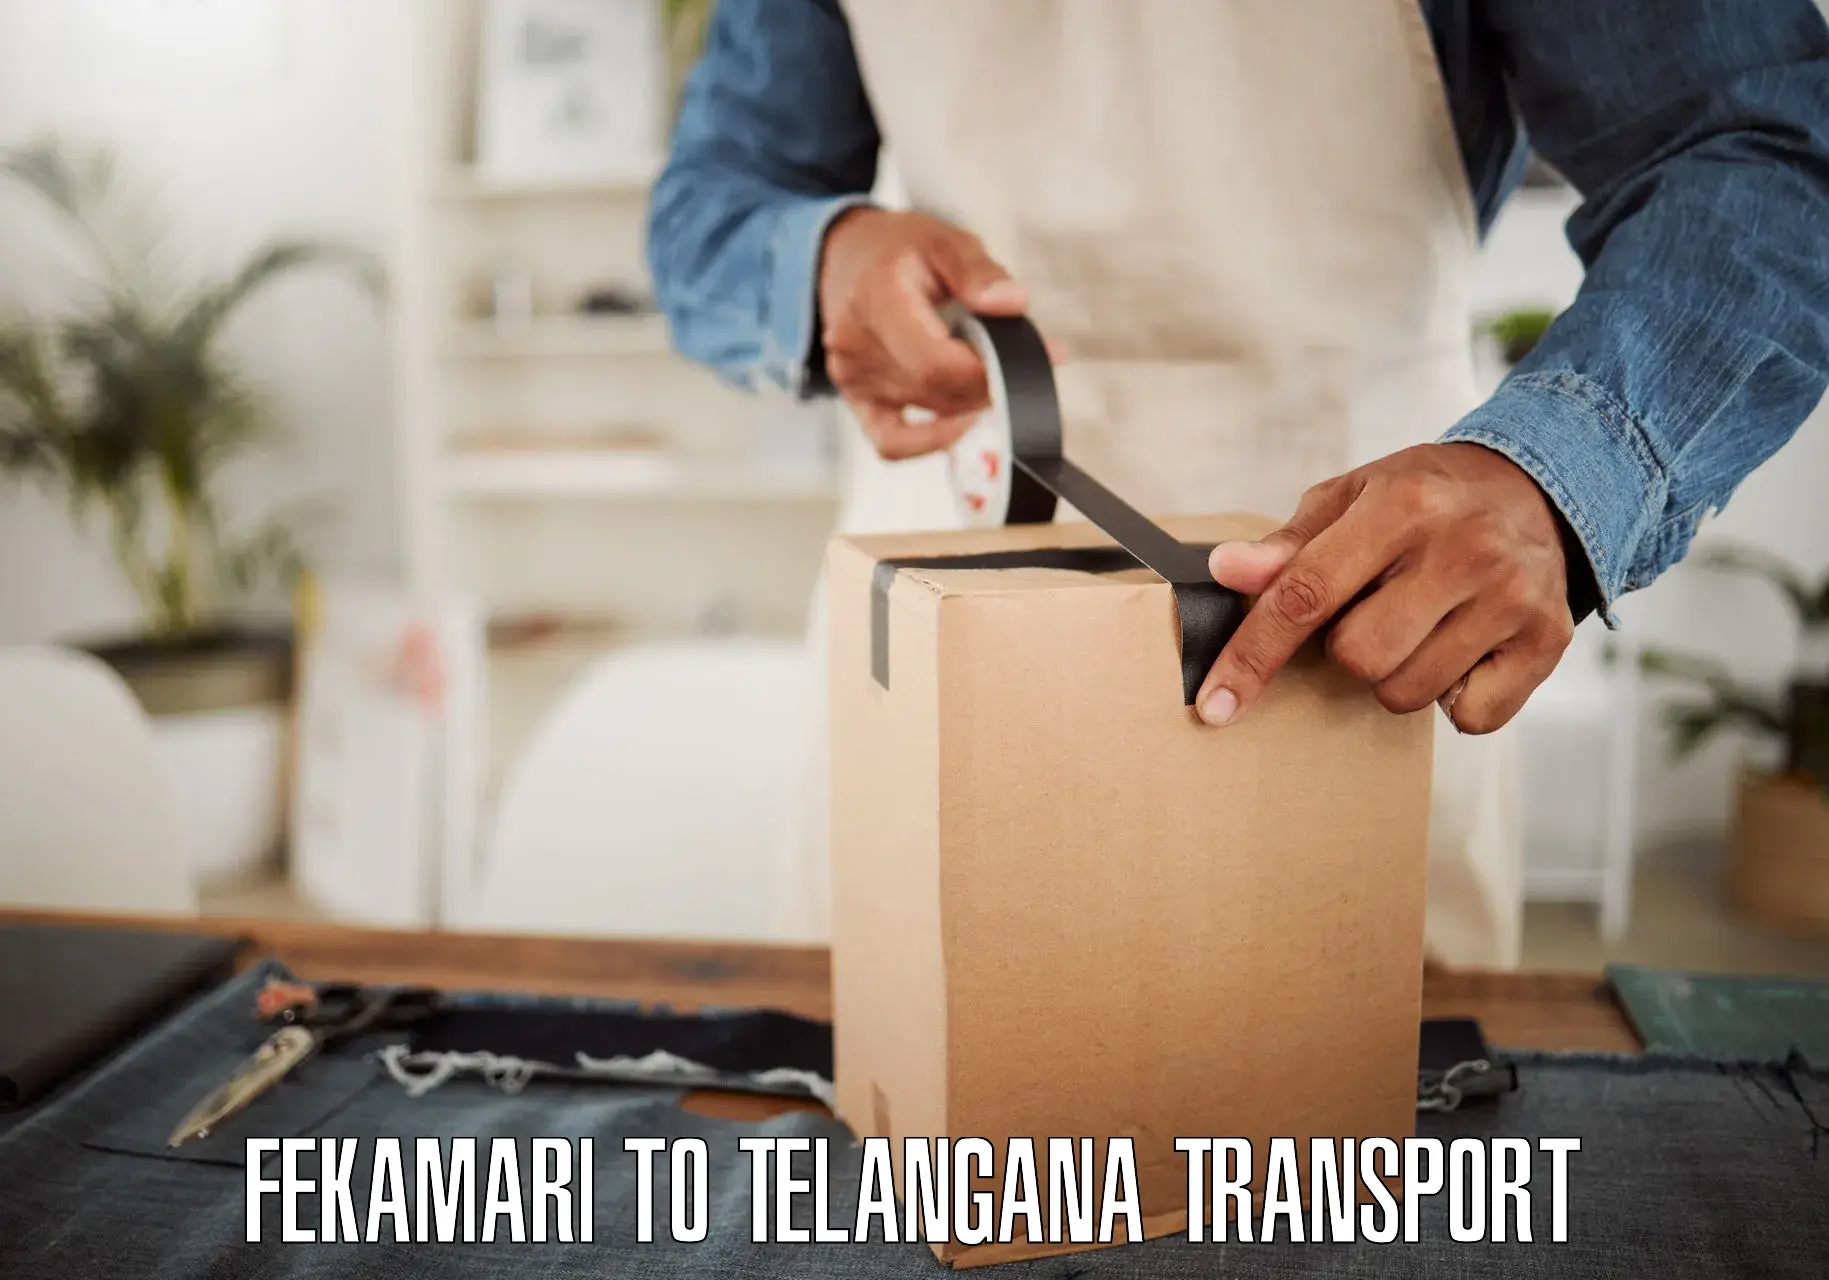 Container transport service Fekamari to Tadvai